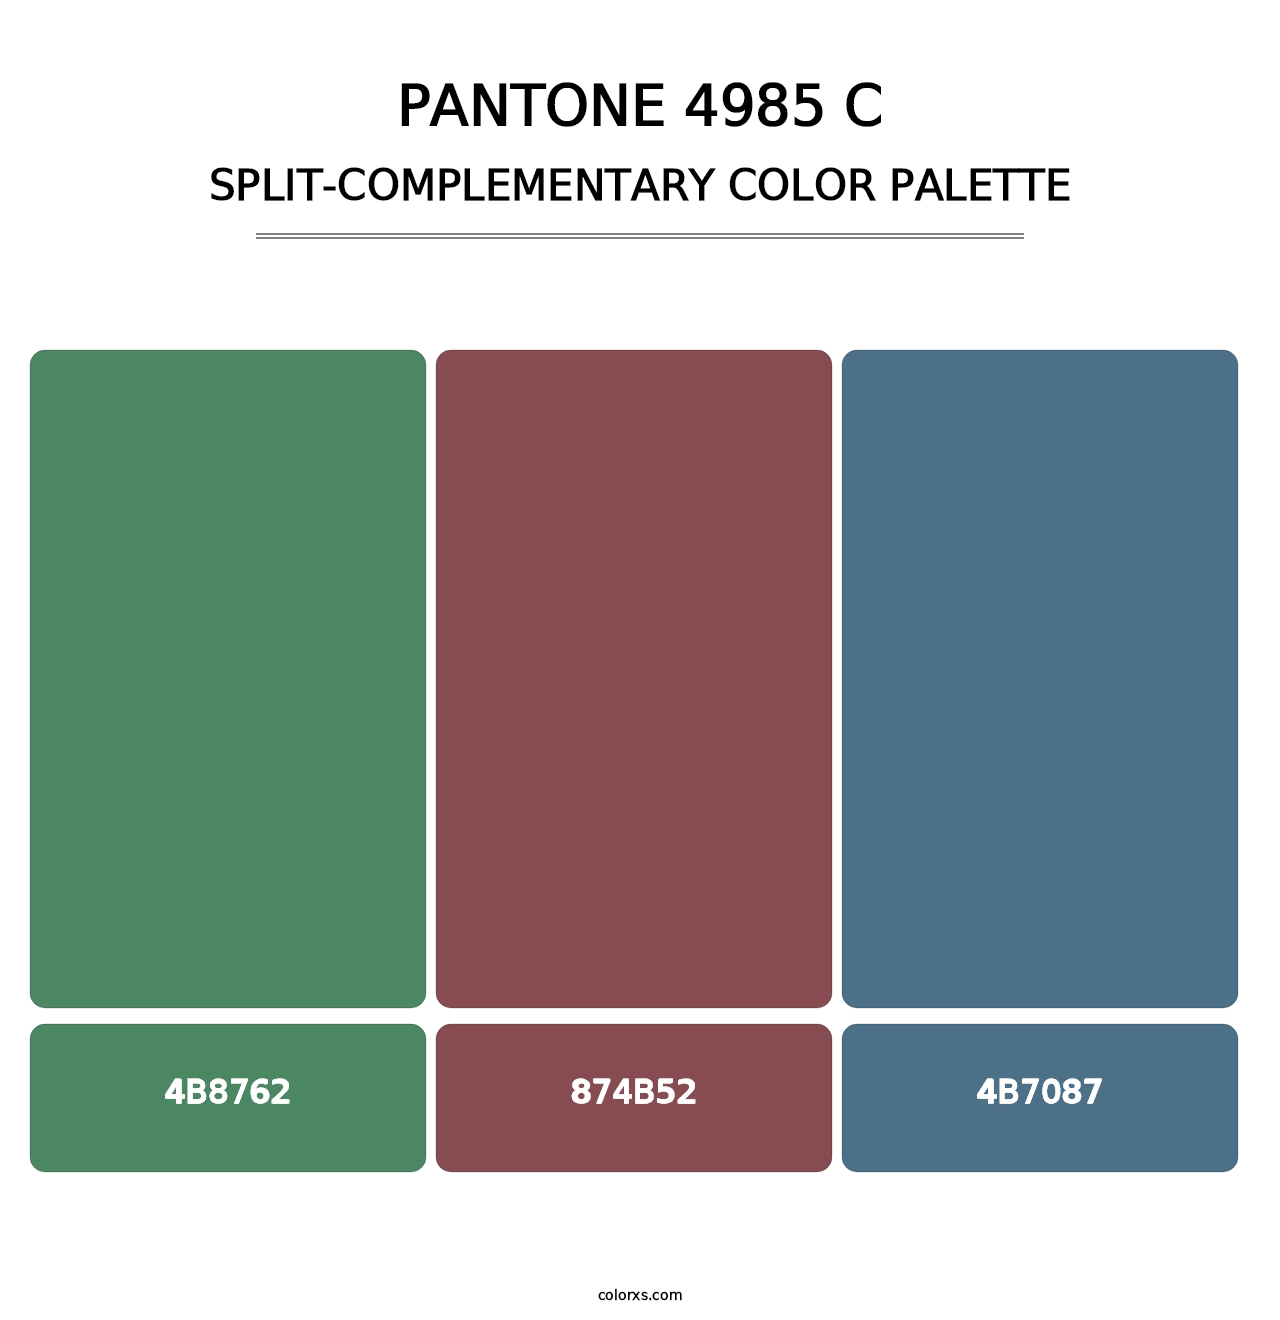 PANTONE 4985 C - Split-Complementary Color Palette